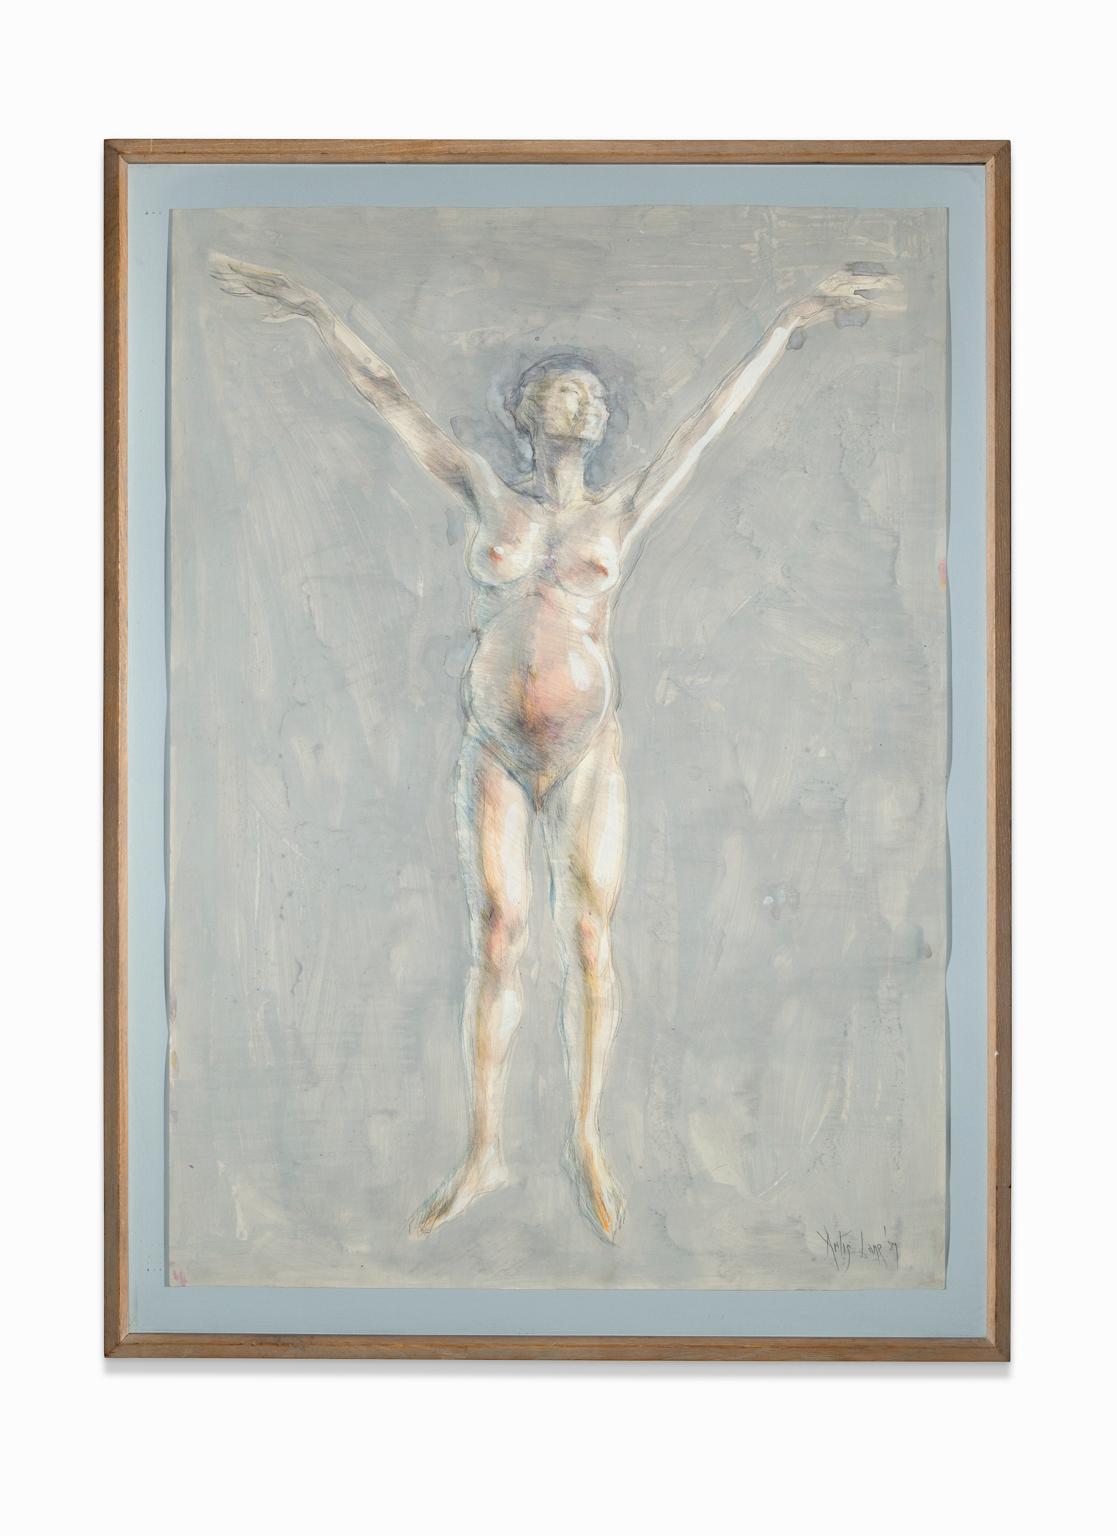 Nude Painting Artis Lane - "Wise Virgin", Aquarelle, Technique mixte, Femme nue, Métaphysique, Mystique